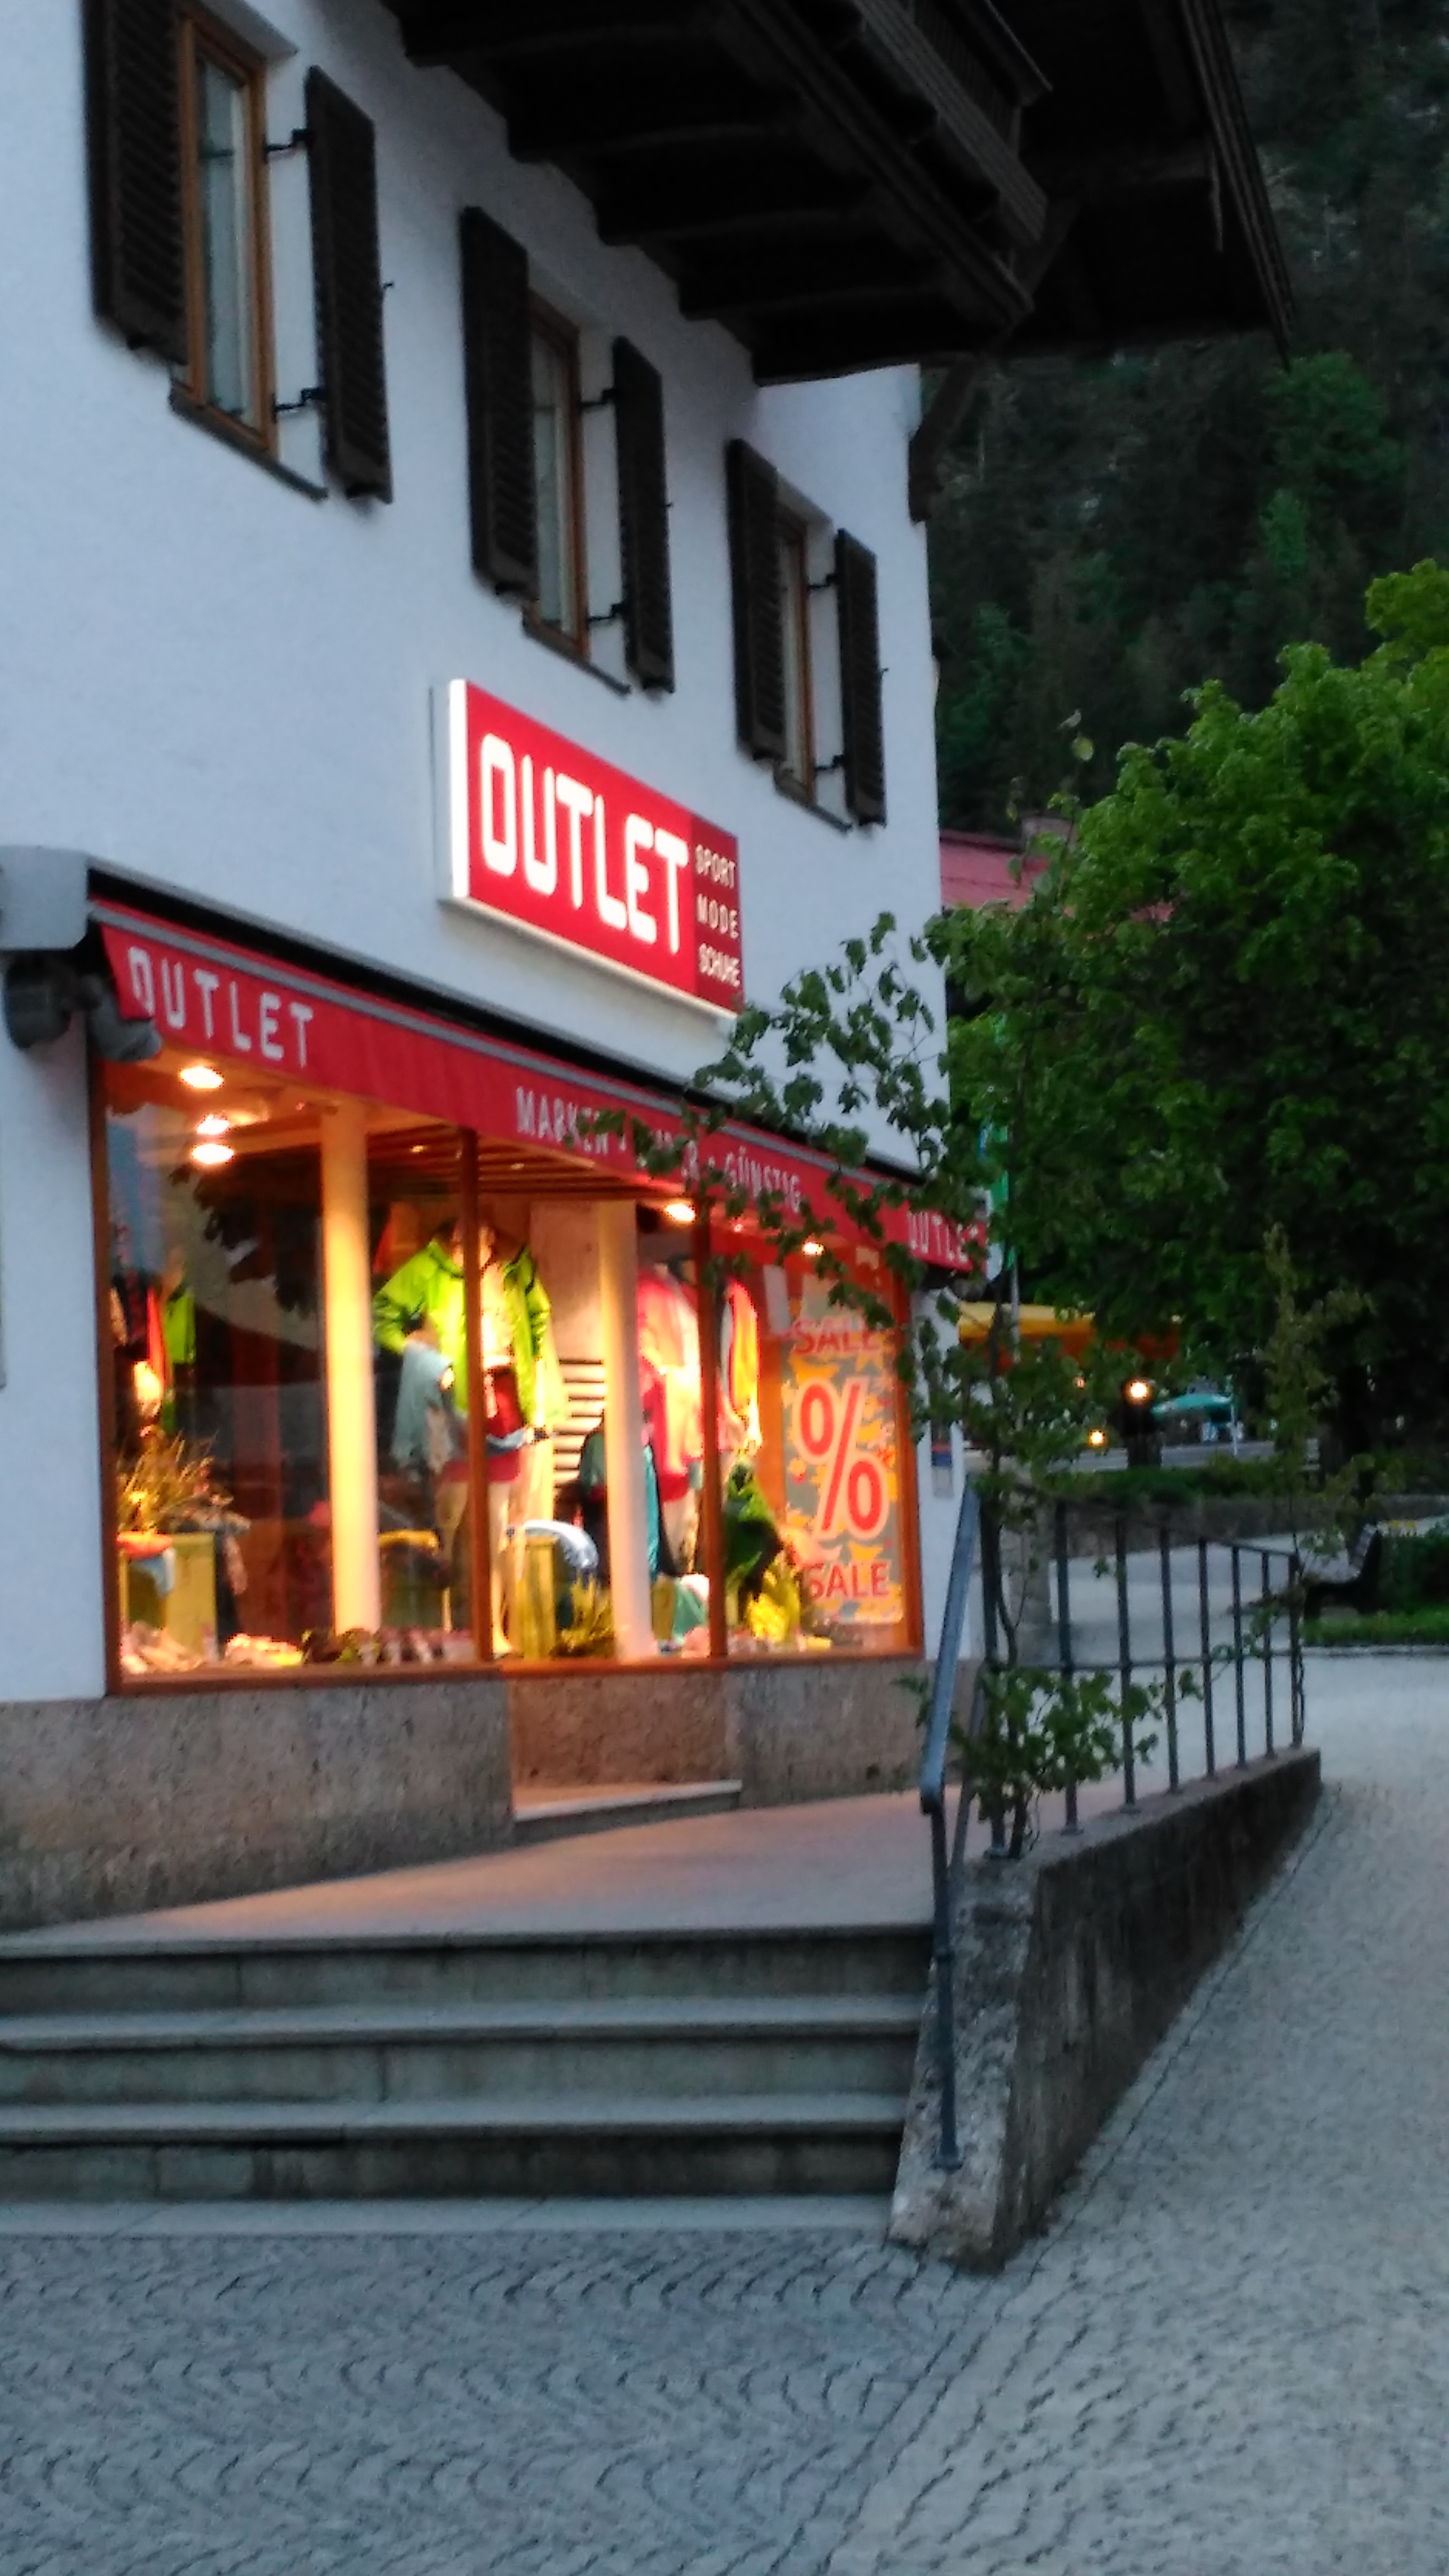 "Outlet" - Shop